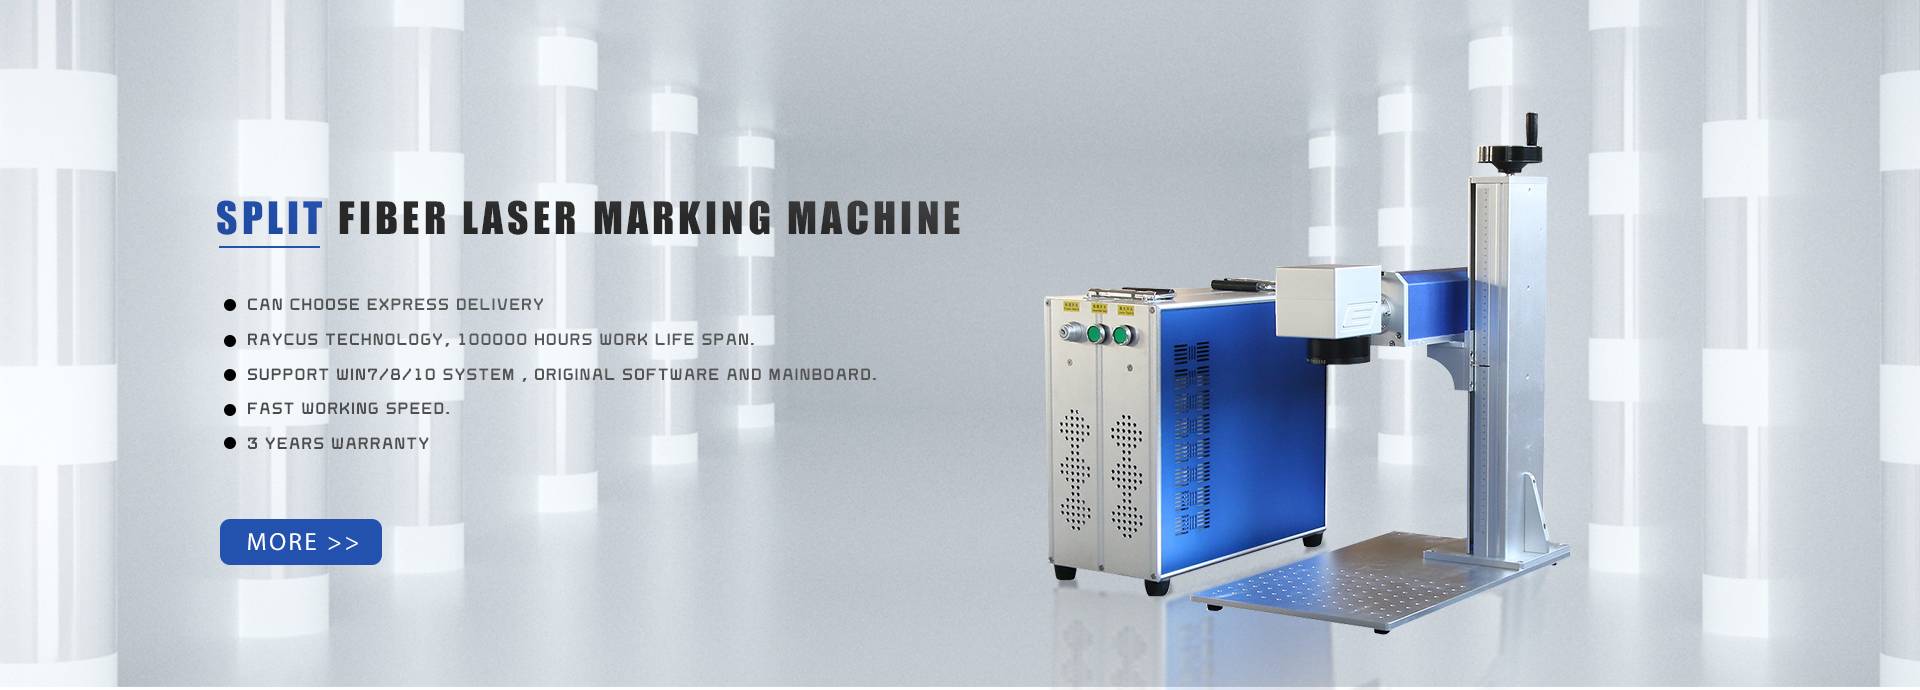 स्प्लिट फाइबर लेजर मार्किंग मशीन